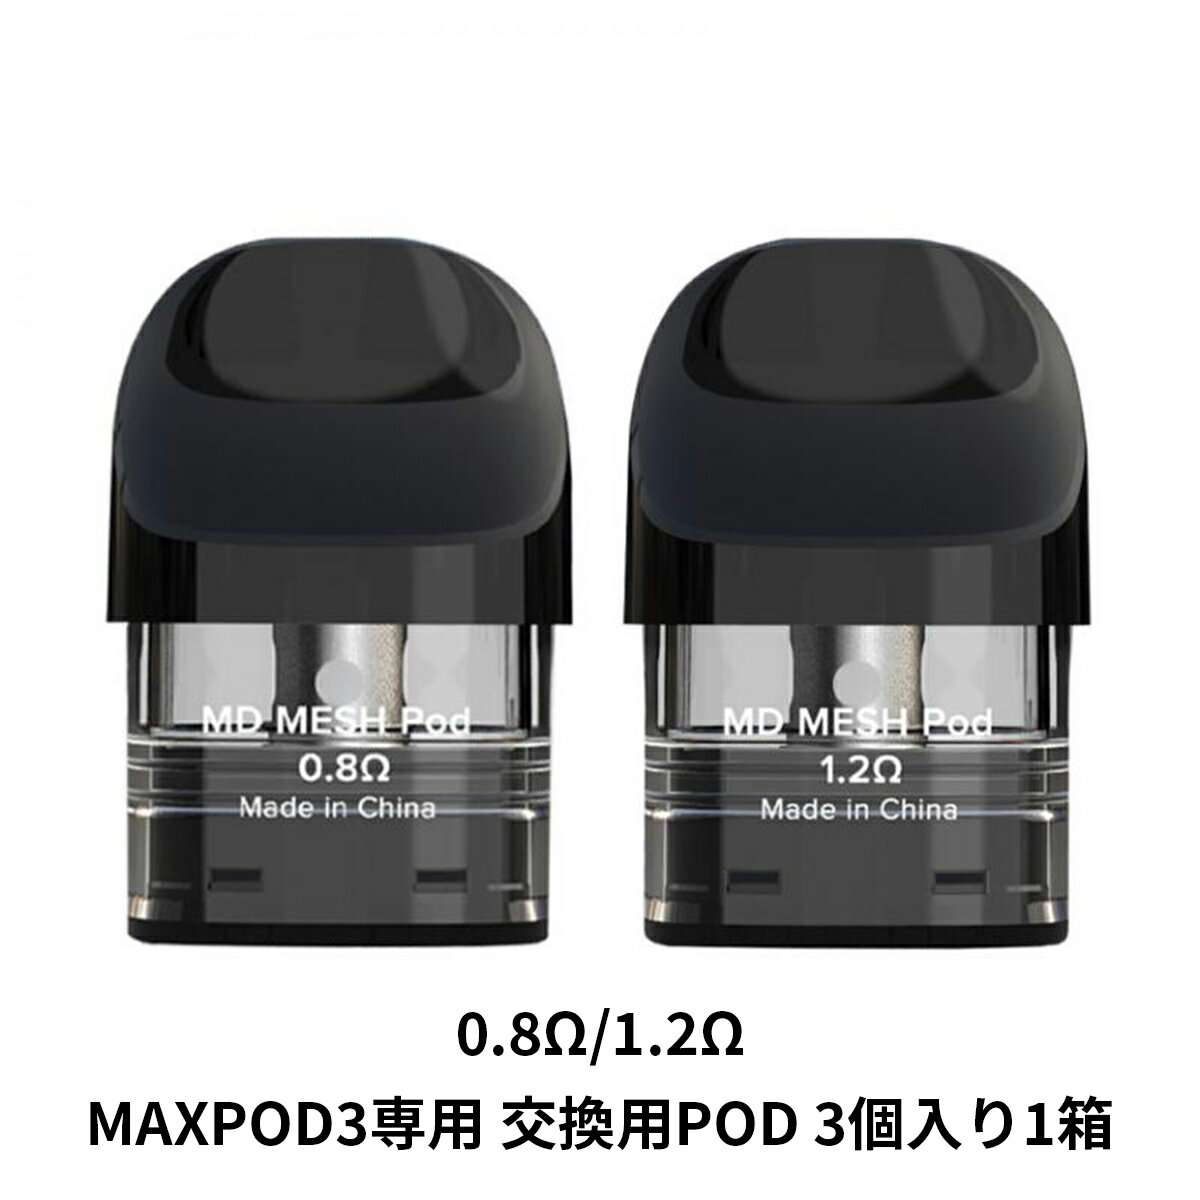 MAXPOD3の交換用PODカートリッジです。 ●MAXPOD3 KIT専用のPODです。 ●0.8Ω、1.2Ωをご用意しました。 ●同抵抗値3個入り×1箱のお届けになります。 ●お好みの抵抗値をお選びください。 ●リキッド容量は2ml。 【スターターキットはこちら】 MAXPOD3 スターターキット 商品仕様 ブランド FreeMaX(フリーマックス) 商品名 MAXPOD3 交換用 POD MD Mesh Pod(エムディー メッシュポッド) 抵抗値 ・0.8Ω ・1.2Ω セット内容 ・PODカートリッジ 3個入り × 1箱 お好みの抵抗値をお選びください。 リキッド容量 2.0ml 対応商品 【スターターキットはこちら】 MAXPOD3 スターターキット同梱おすすめ商品はこちらご購入はこちらからご購入はこちらから